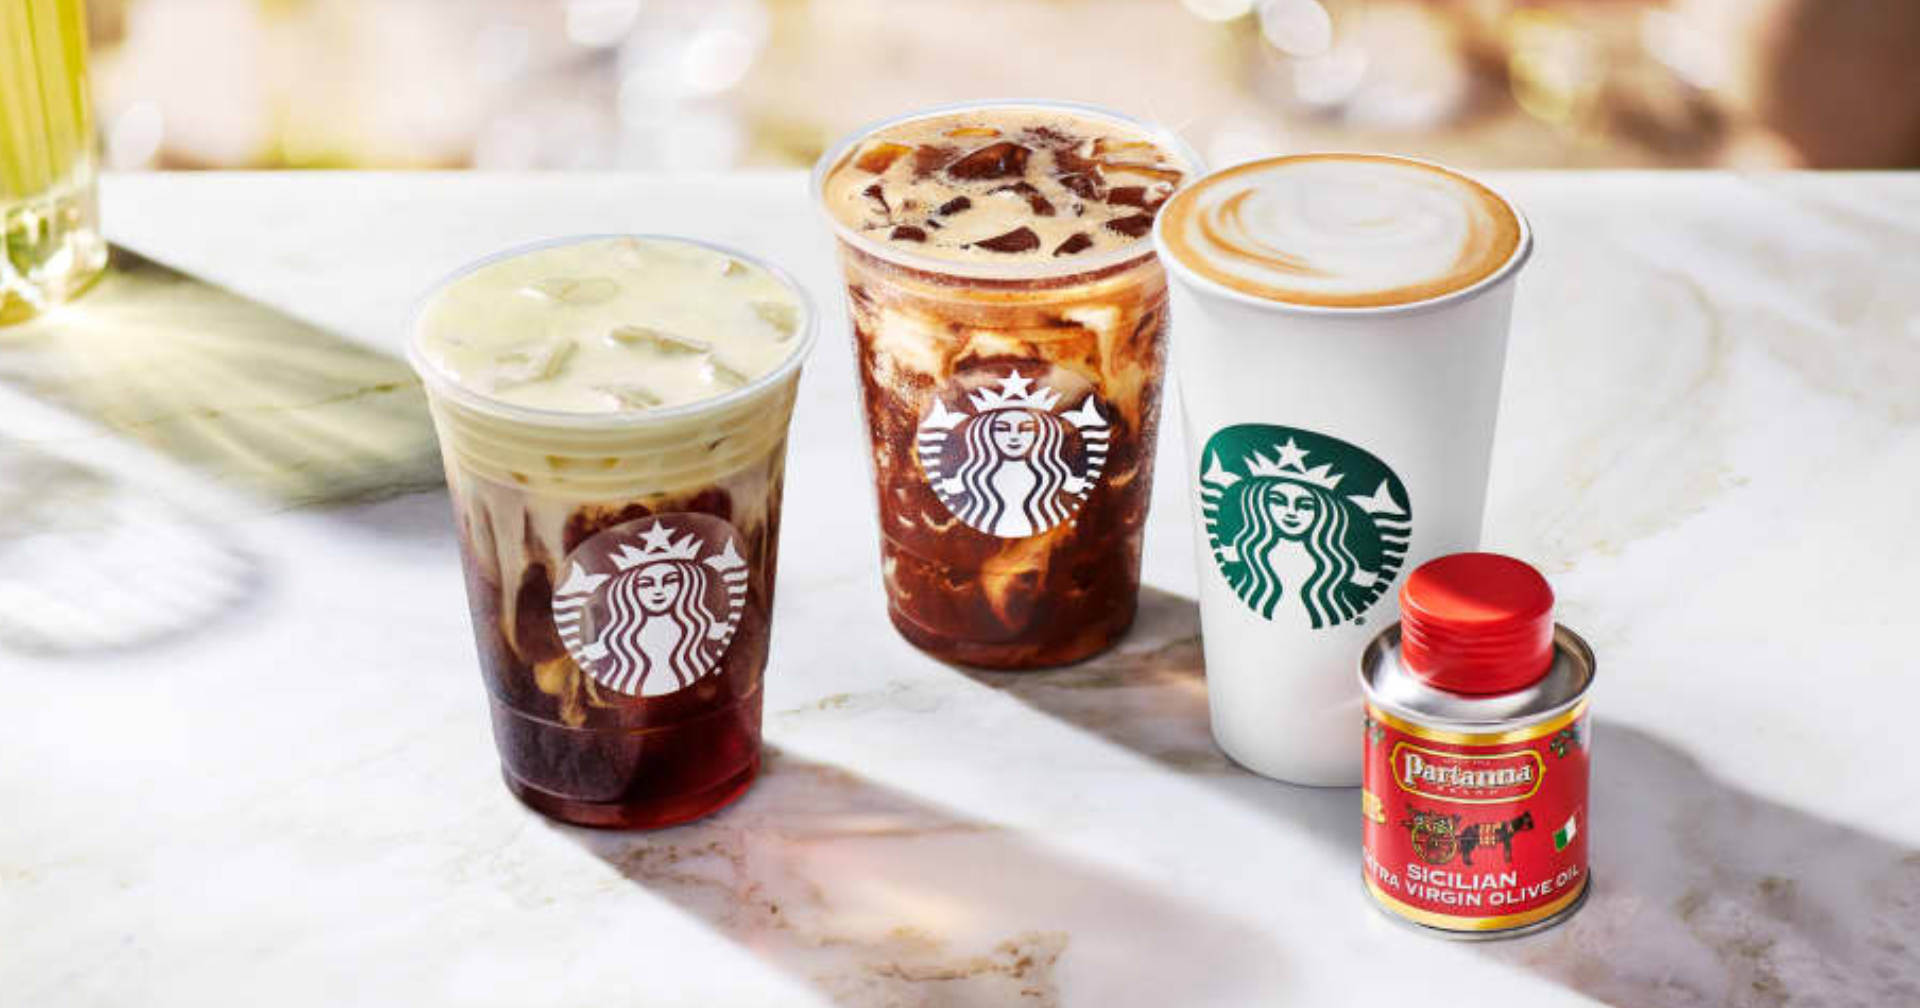 Starbucks เปิดตัวกาแฟผสมน้ำมันมะกอกที่แรกในอิตาลี เตรียมขายทั่วโลกภายในสิ้นปี